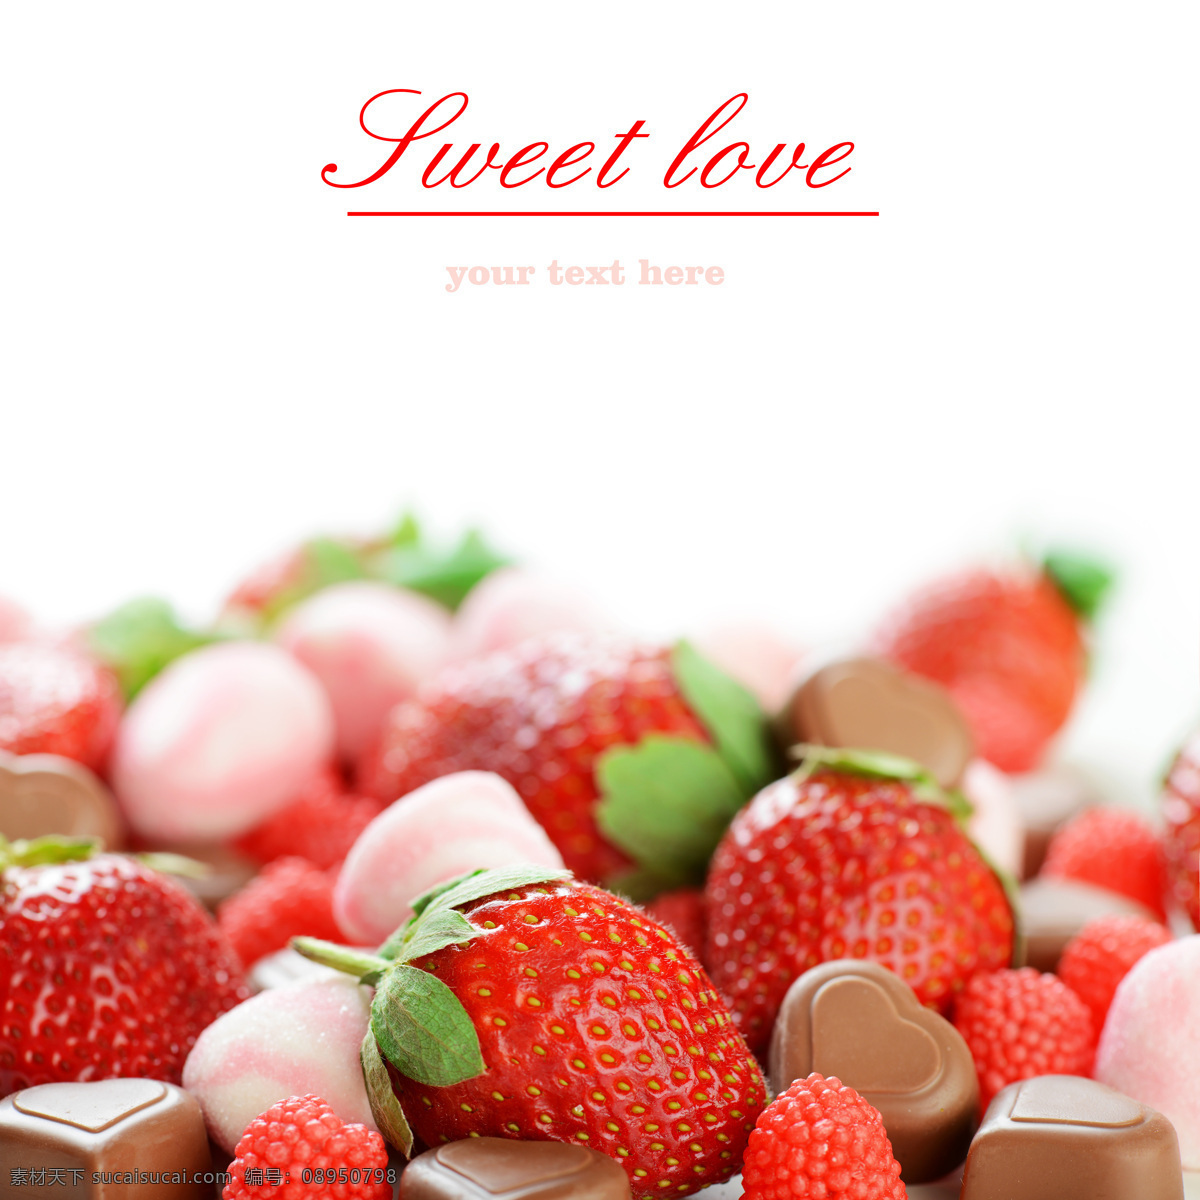 巧克力 糖果 新鲜 草莓 巧克力糖果 心型 叶子 蔬菜图片 餐饮美食